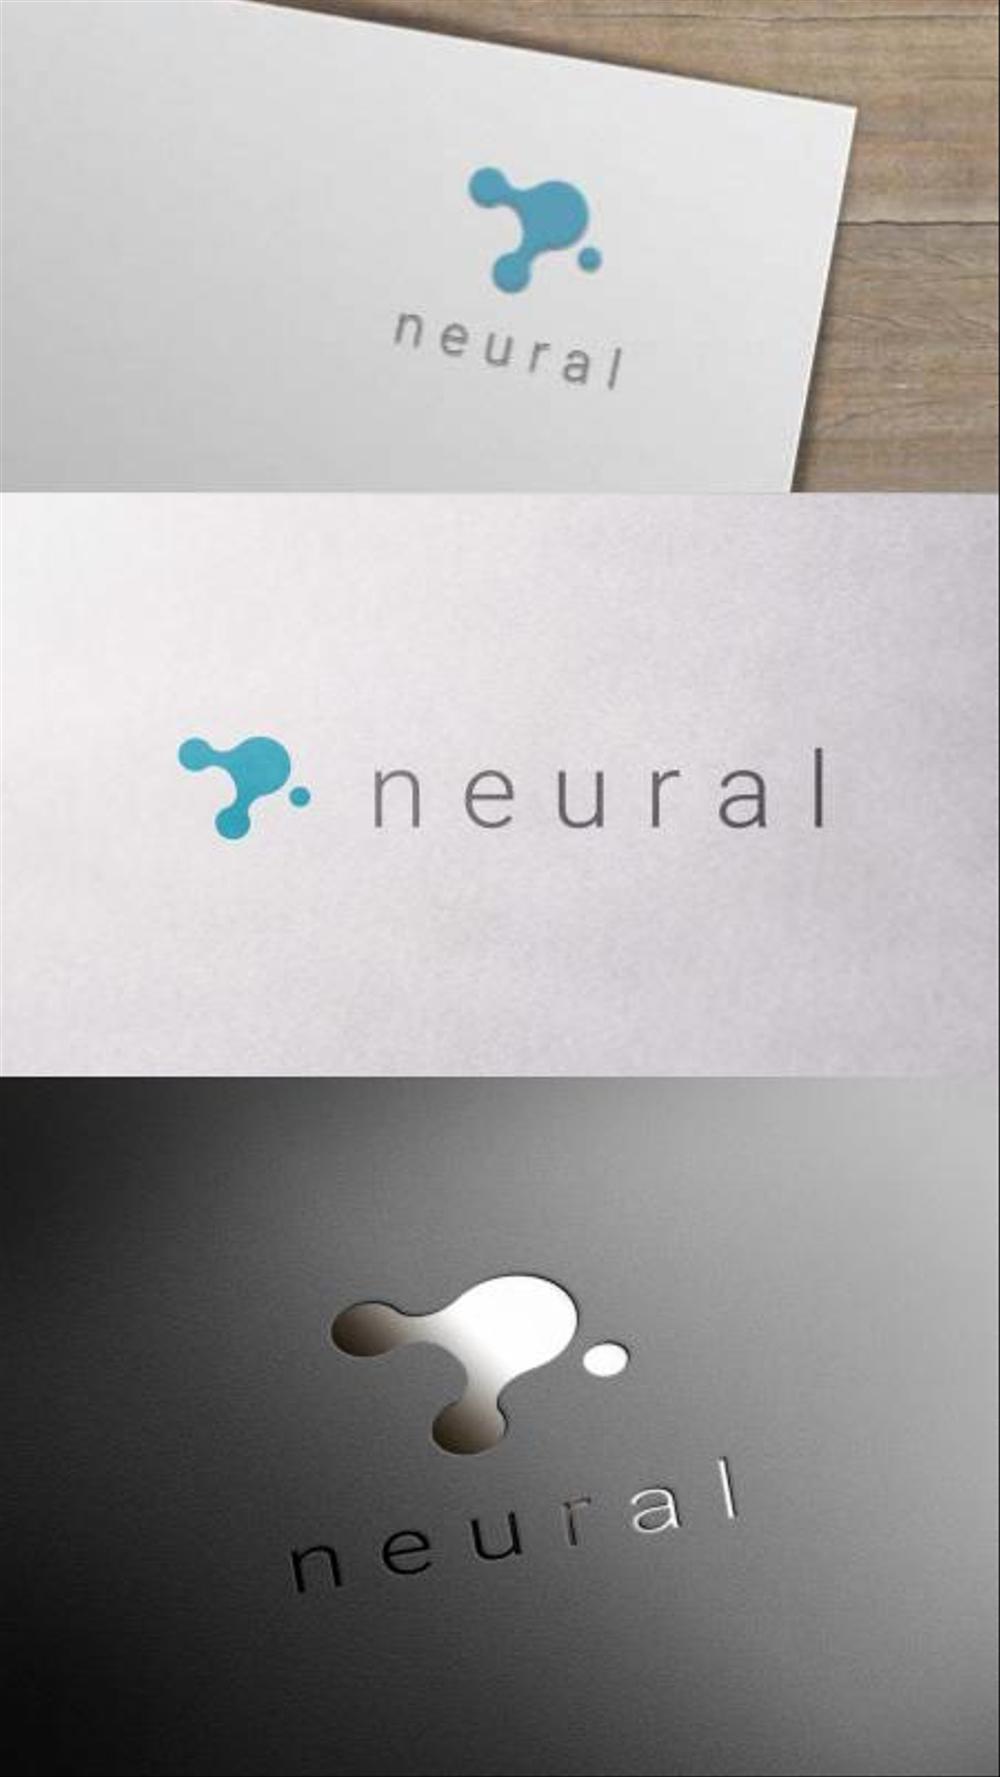 IT系の集客サービス会社「neural」のロゴ